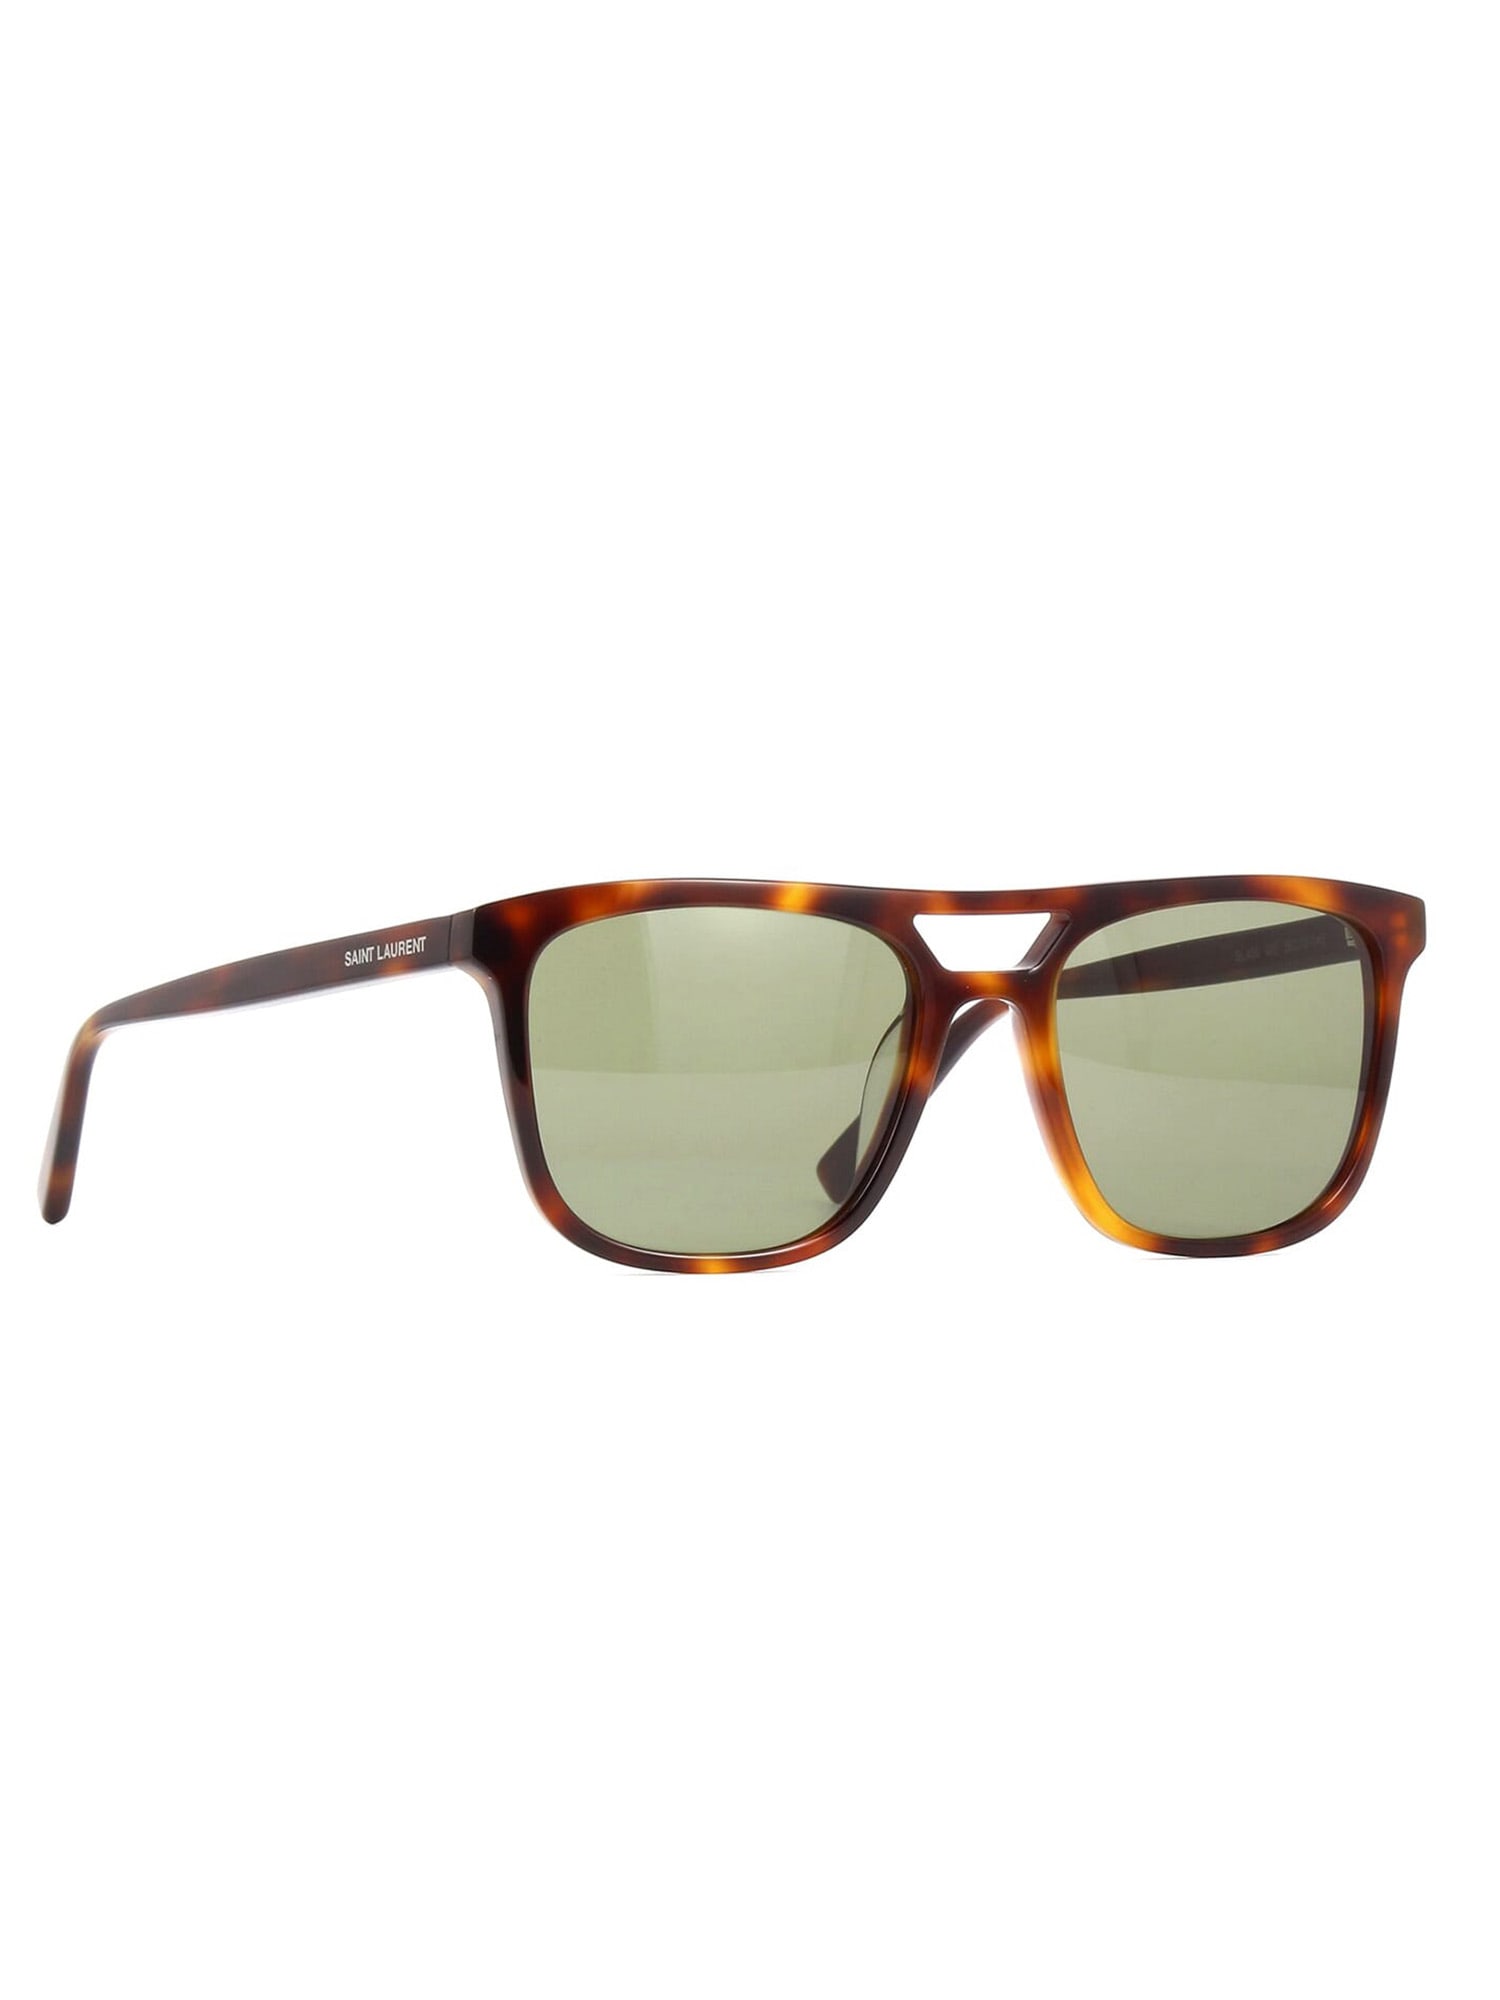 Saint Laurent Eyewear SL 455 Sunglasses